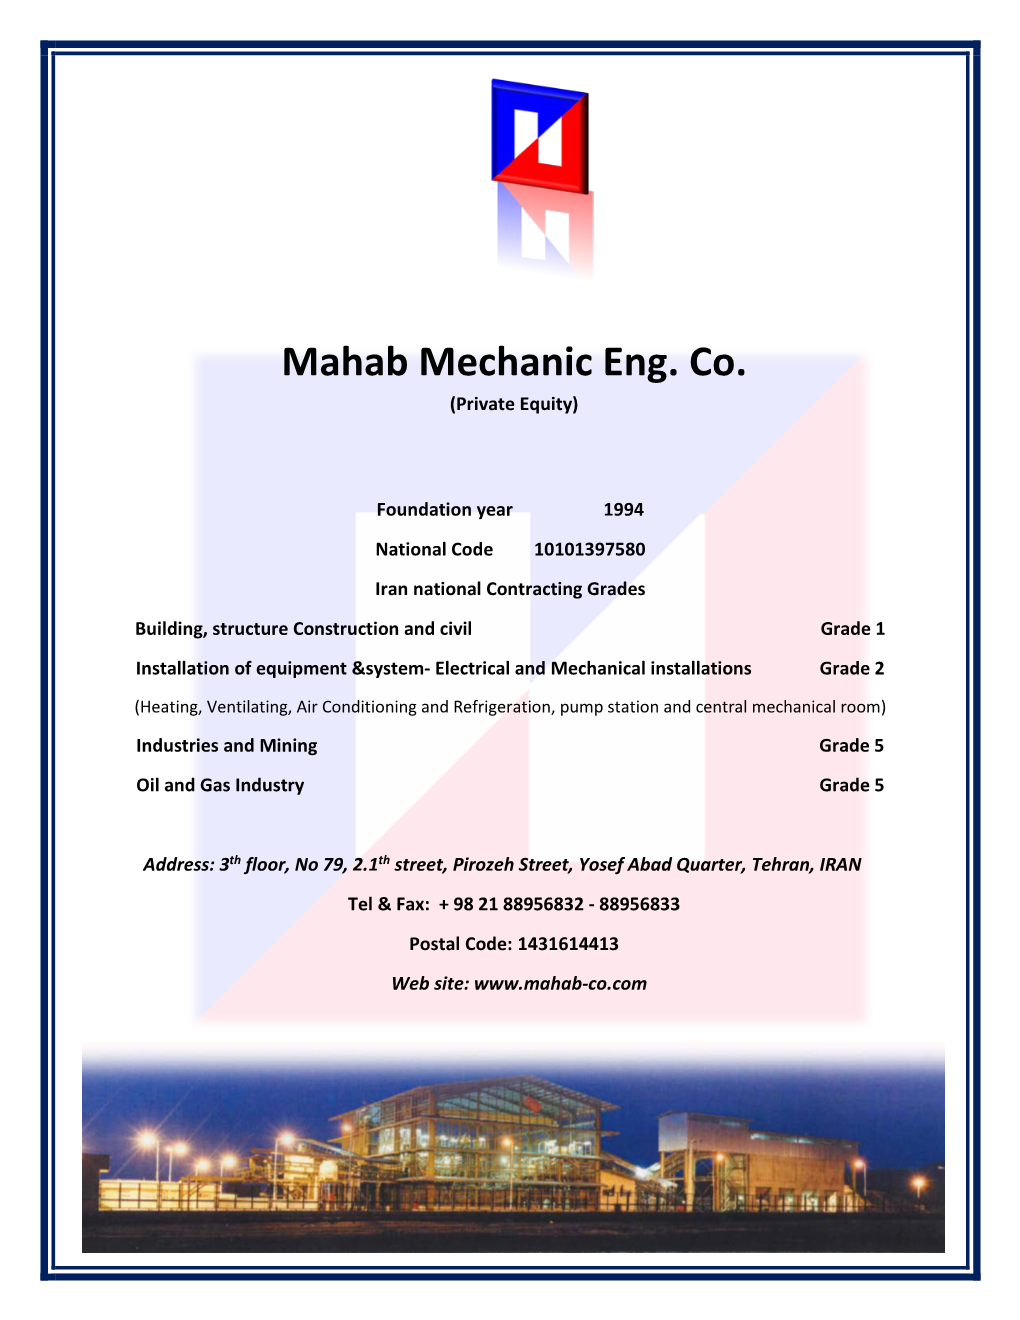 Mahab Mechanic Eng. Co